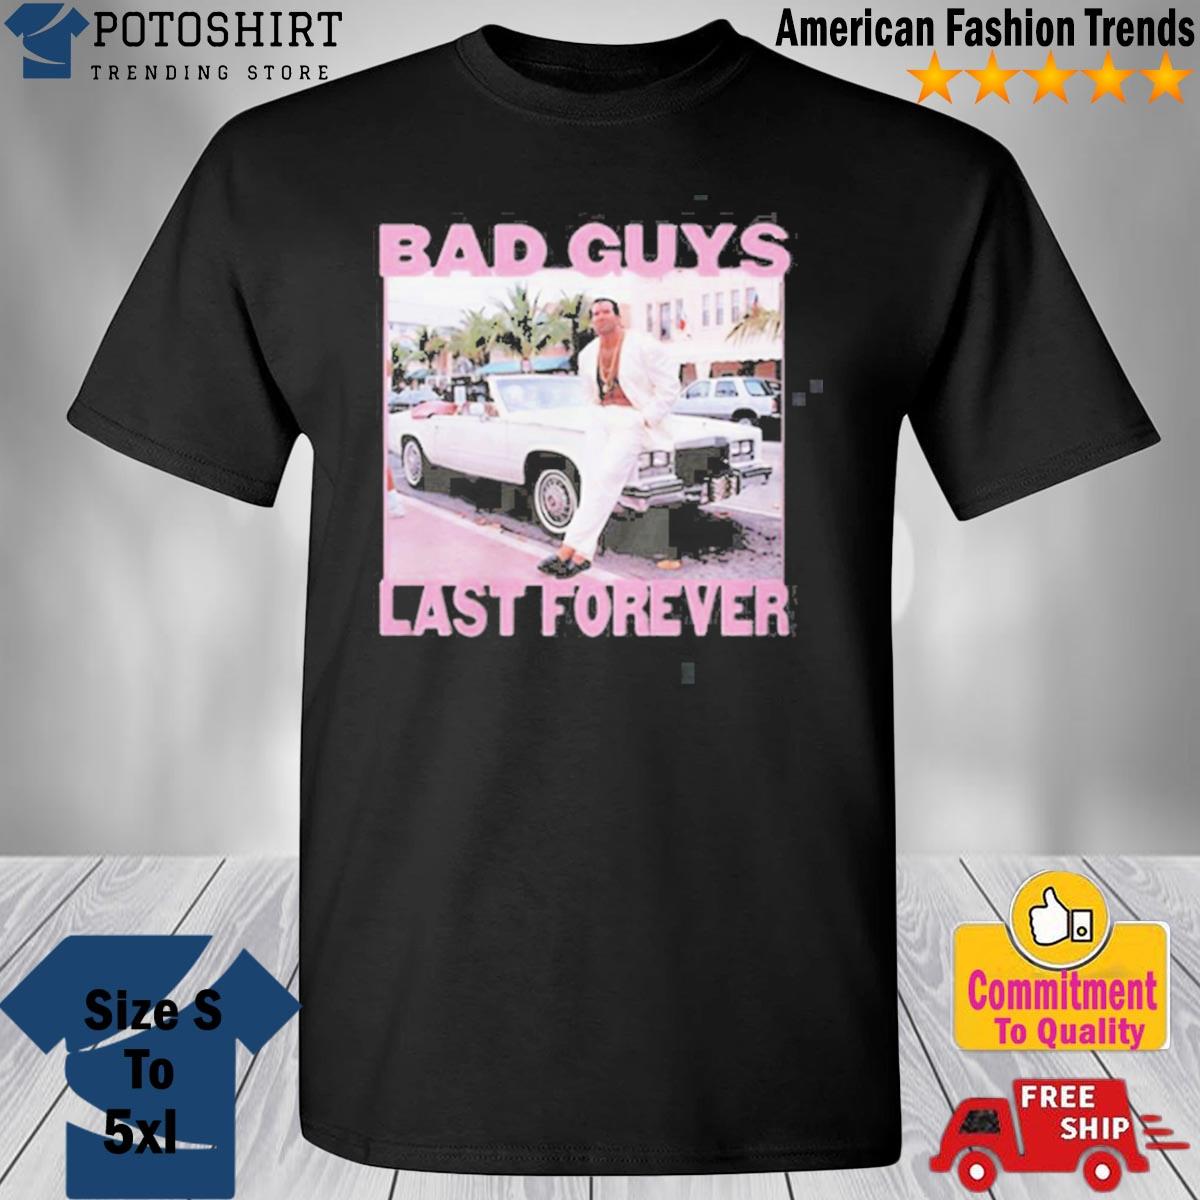 Bad guys last forever T-shirt